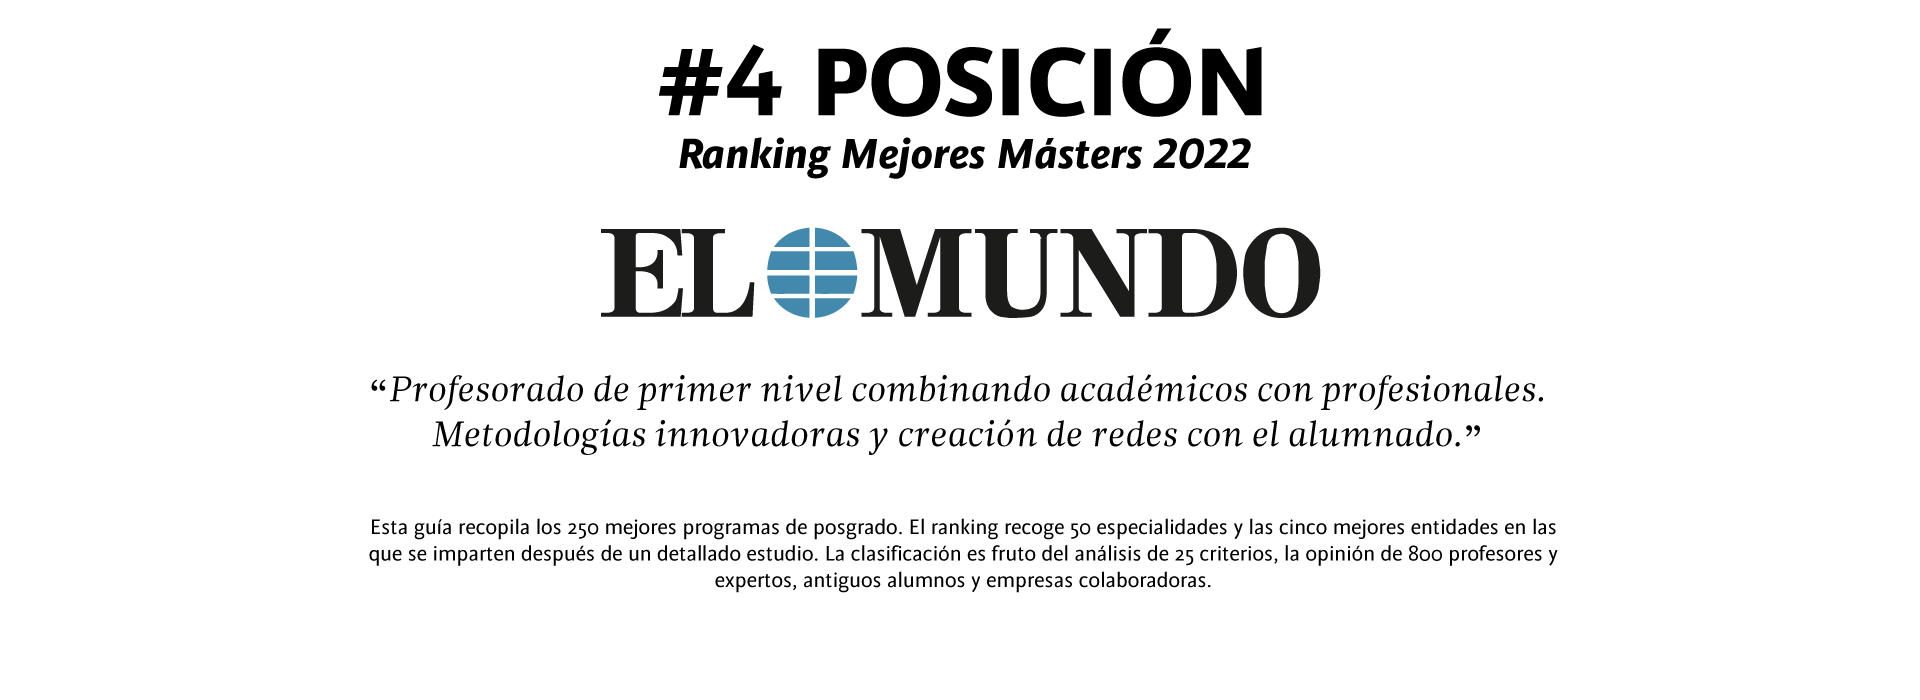 EL_MUNDO_CAST